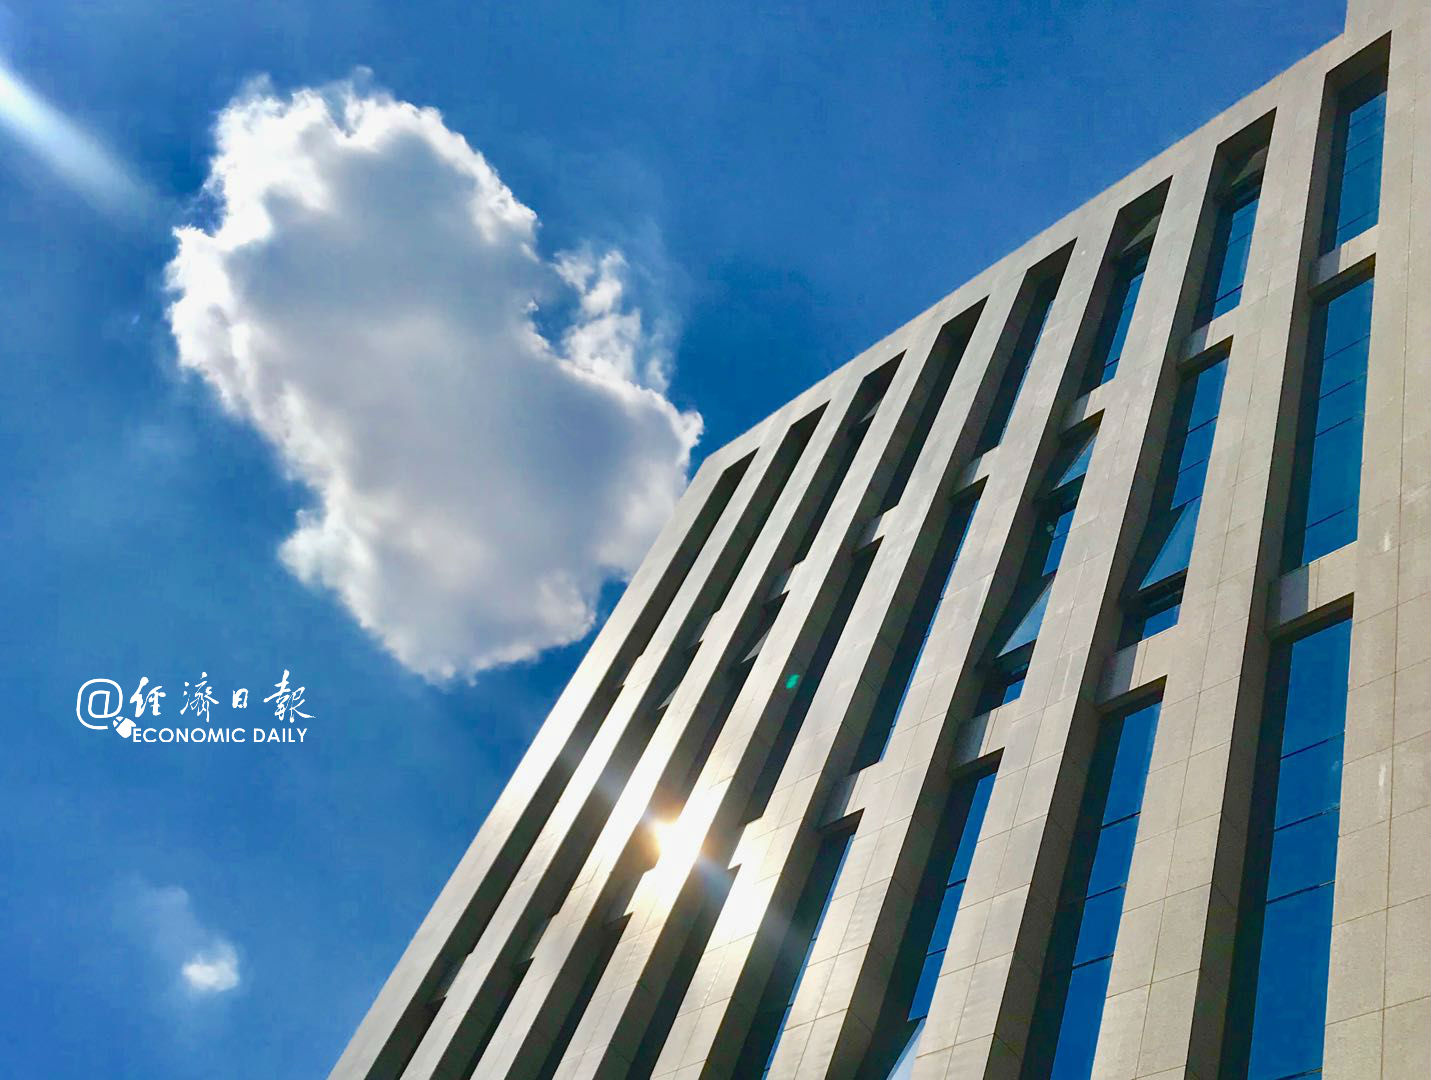 经济日报 大楼 蓝天白云 建筑 于浩2